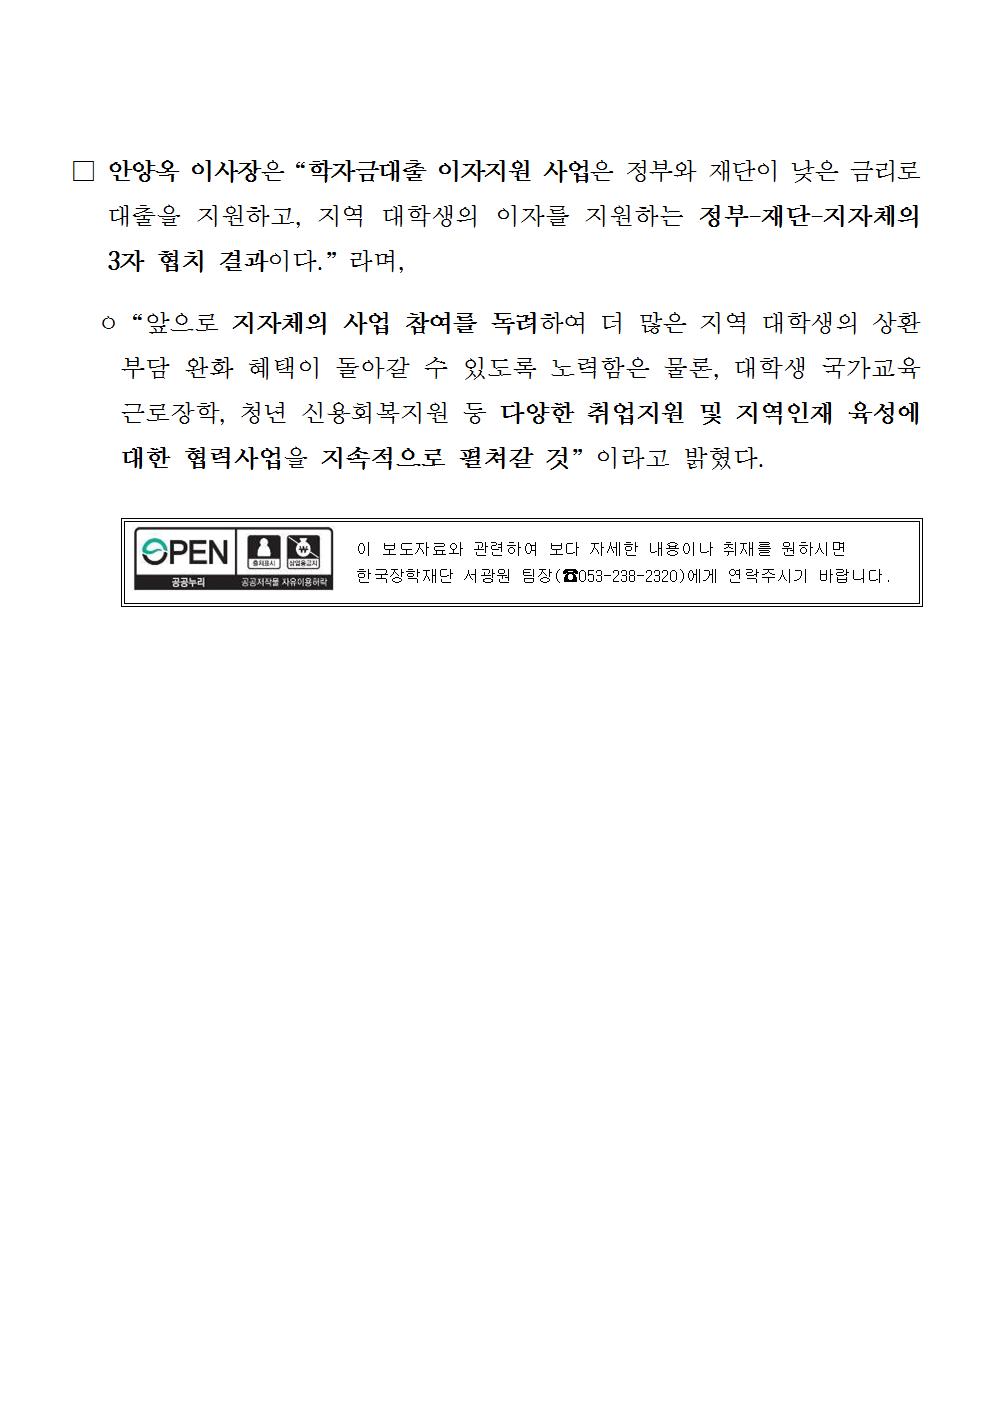 04-20(목)[보도자료] 한국장학재단, 당진시와 학자금대출 이자지원 업무협약 체결003.jpg